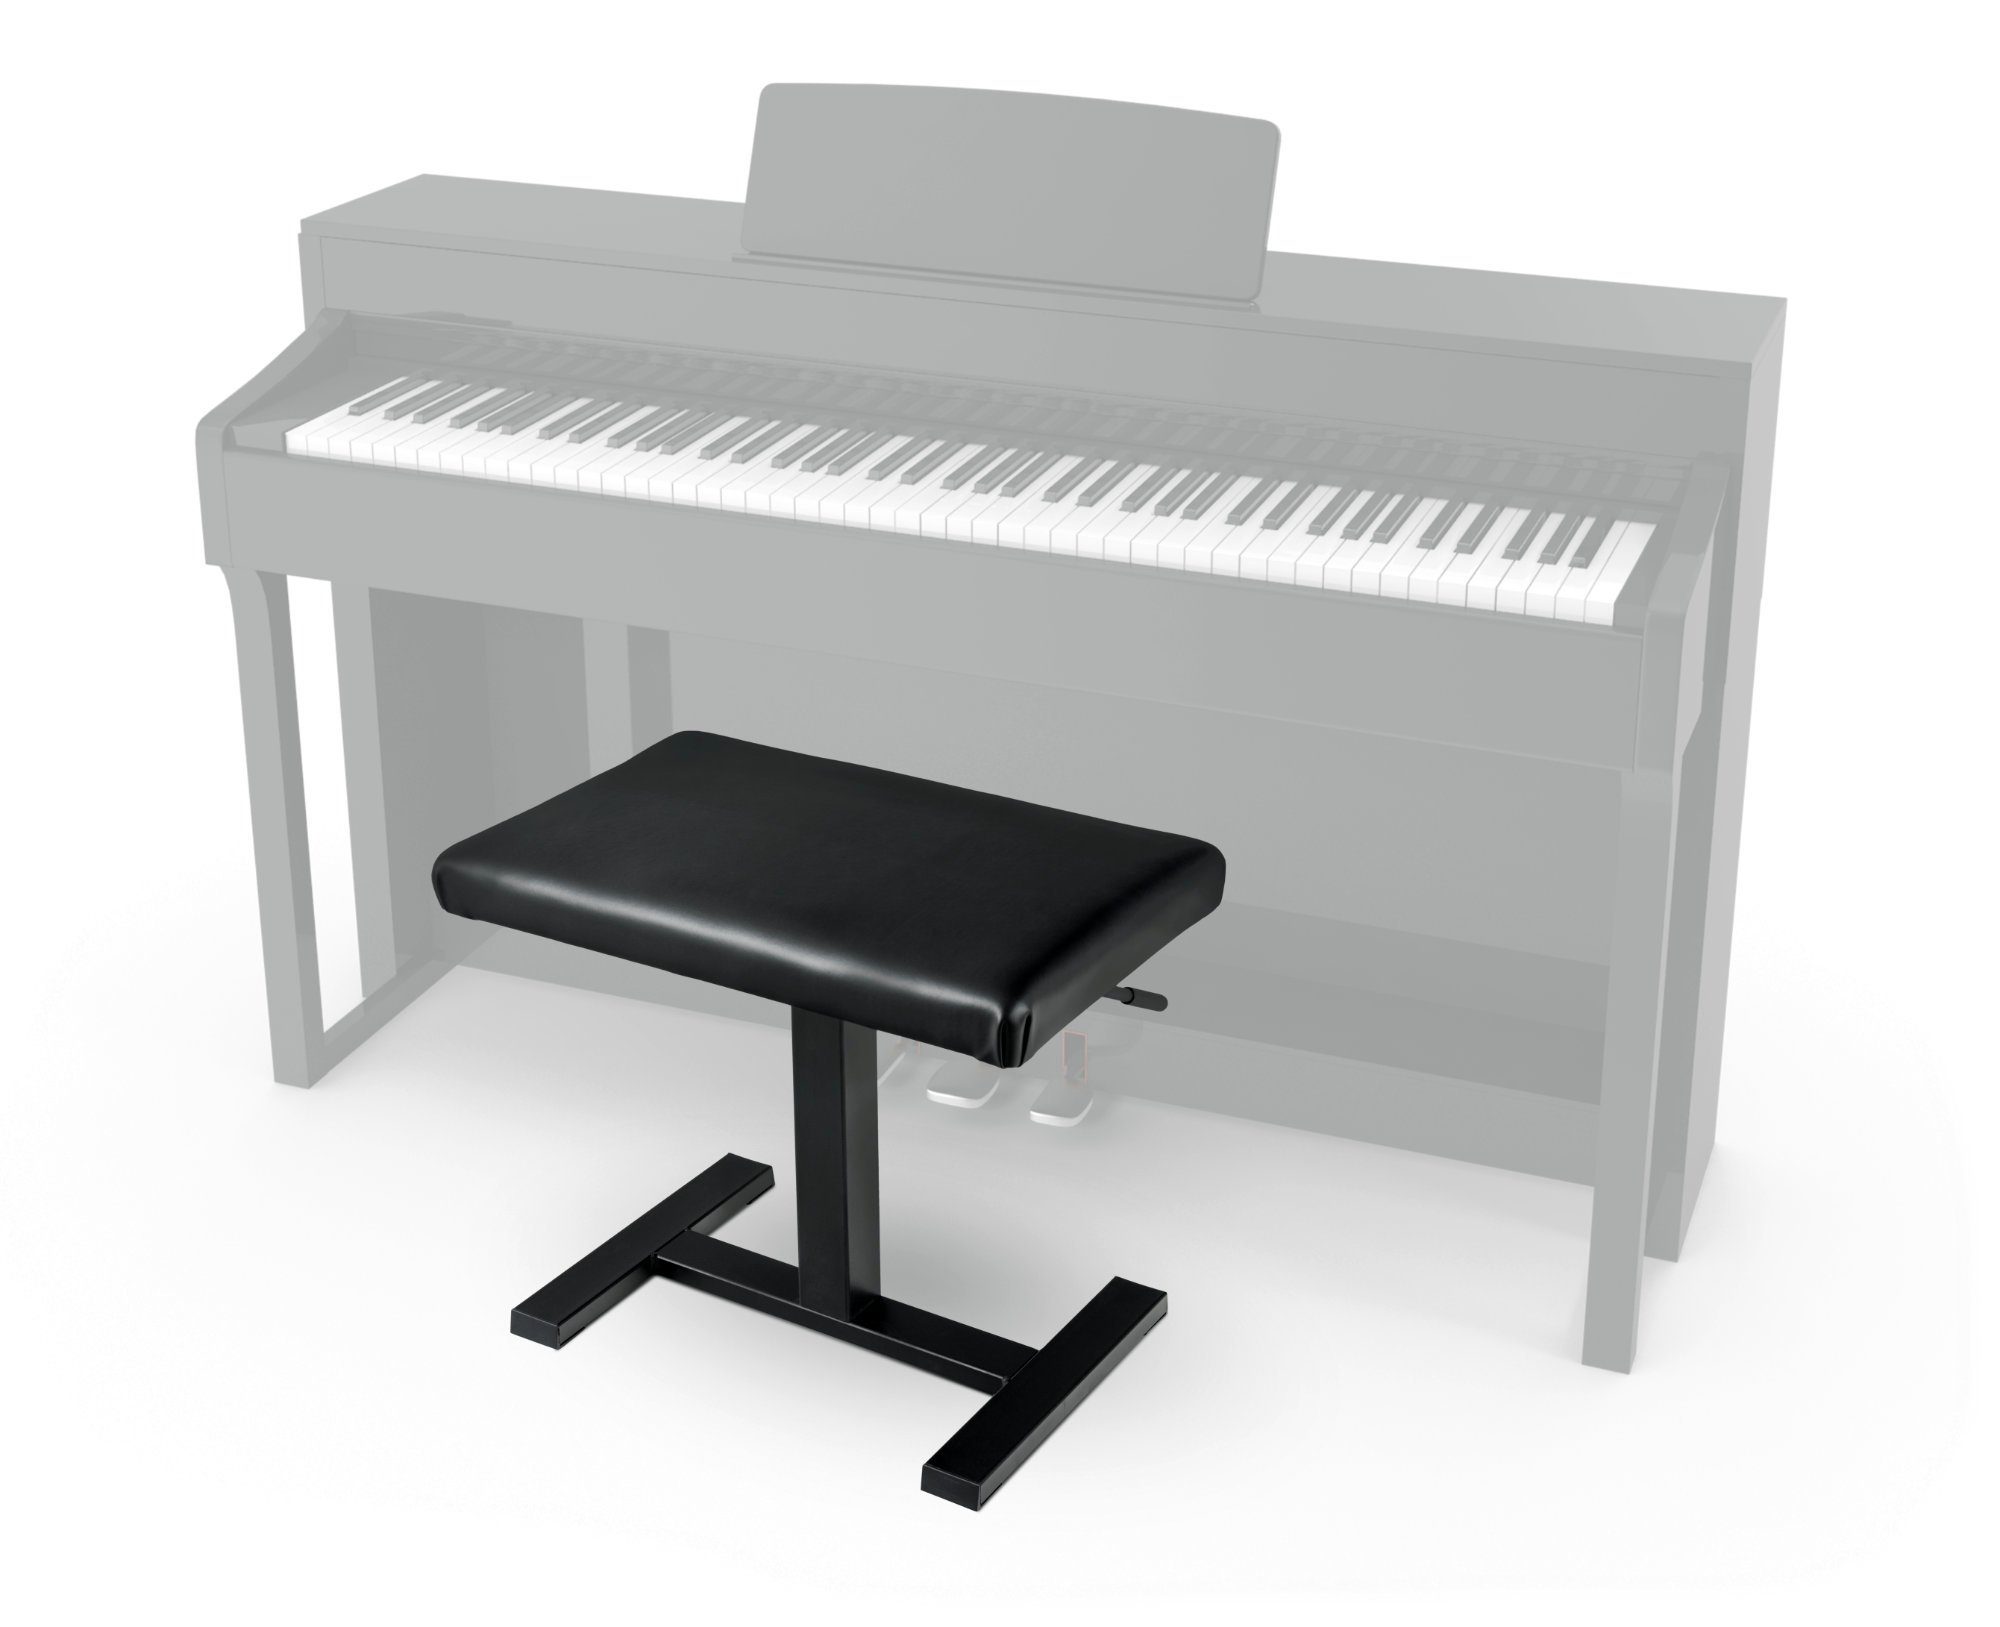 Pianobank, Öldruckfeder - Sitzhöhe mittels verstellbar Klavierbank Classic Hydraulische “Easy” Cantabile